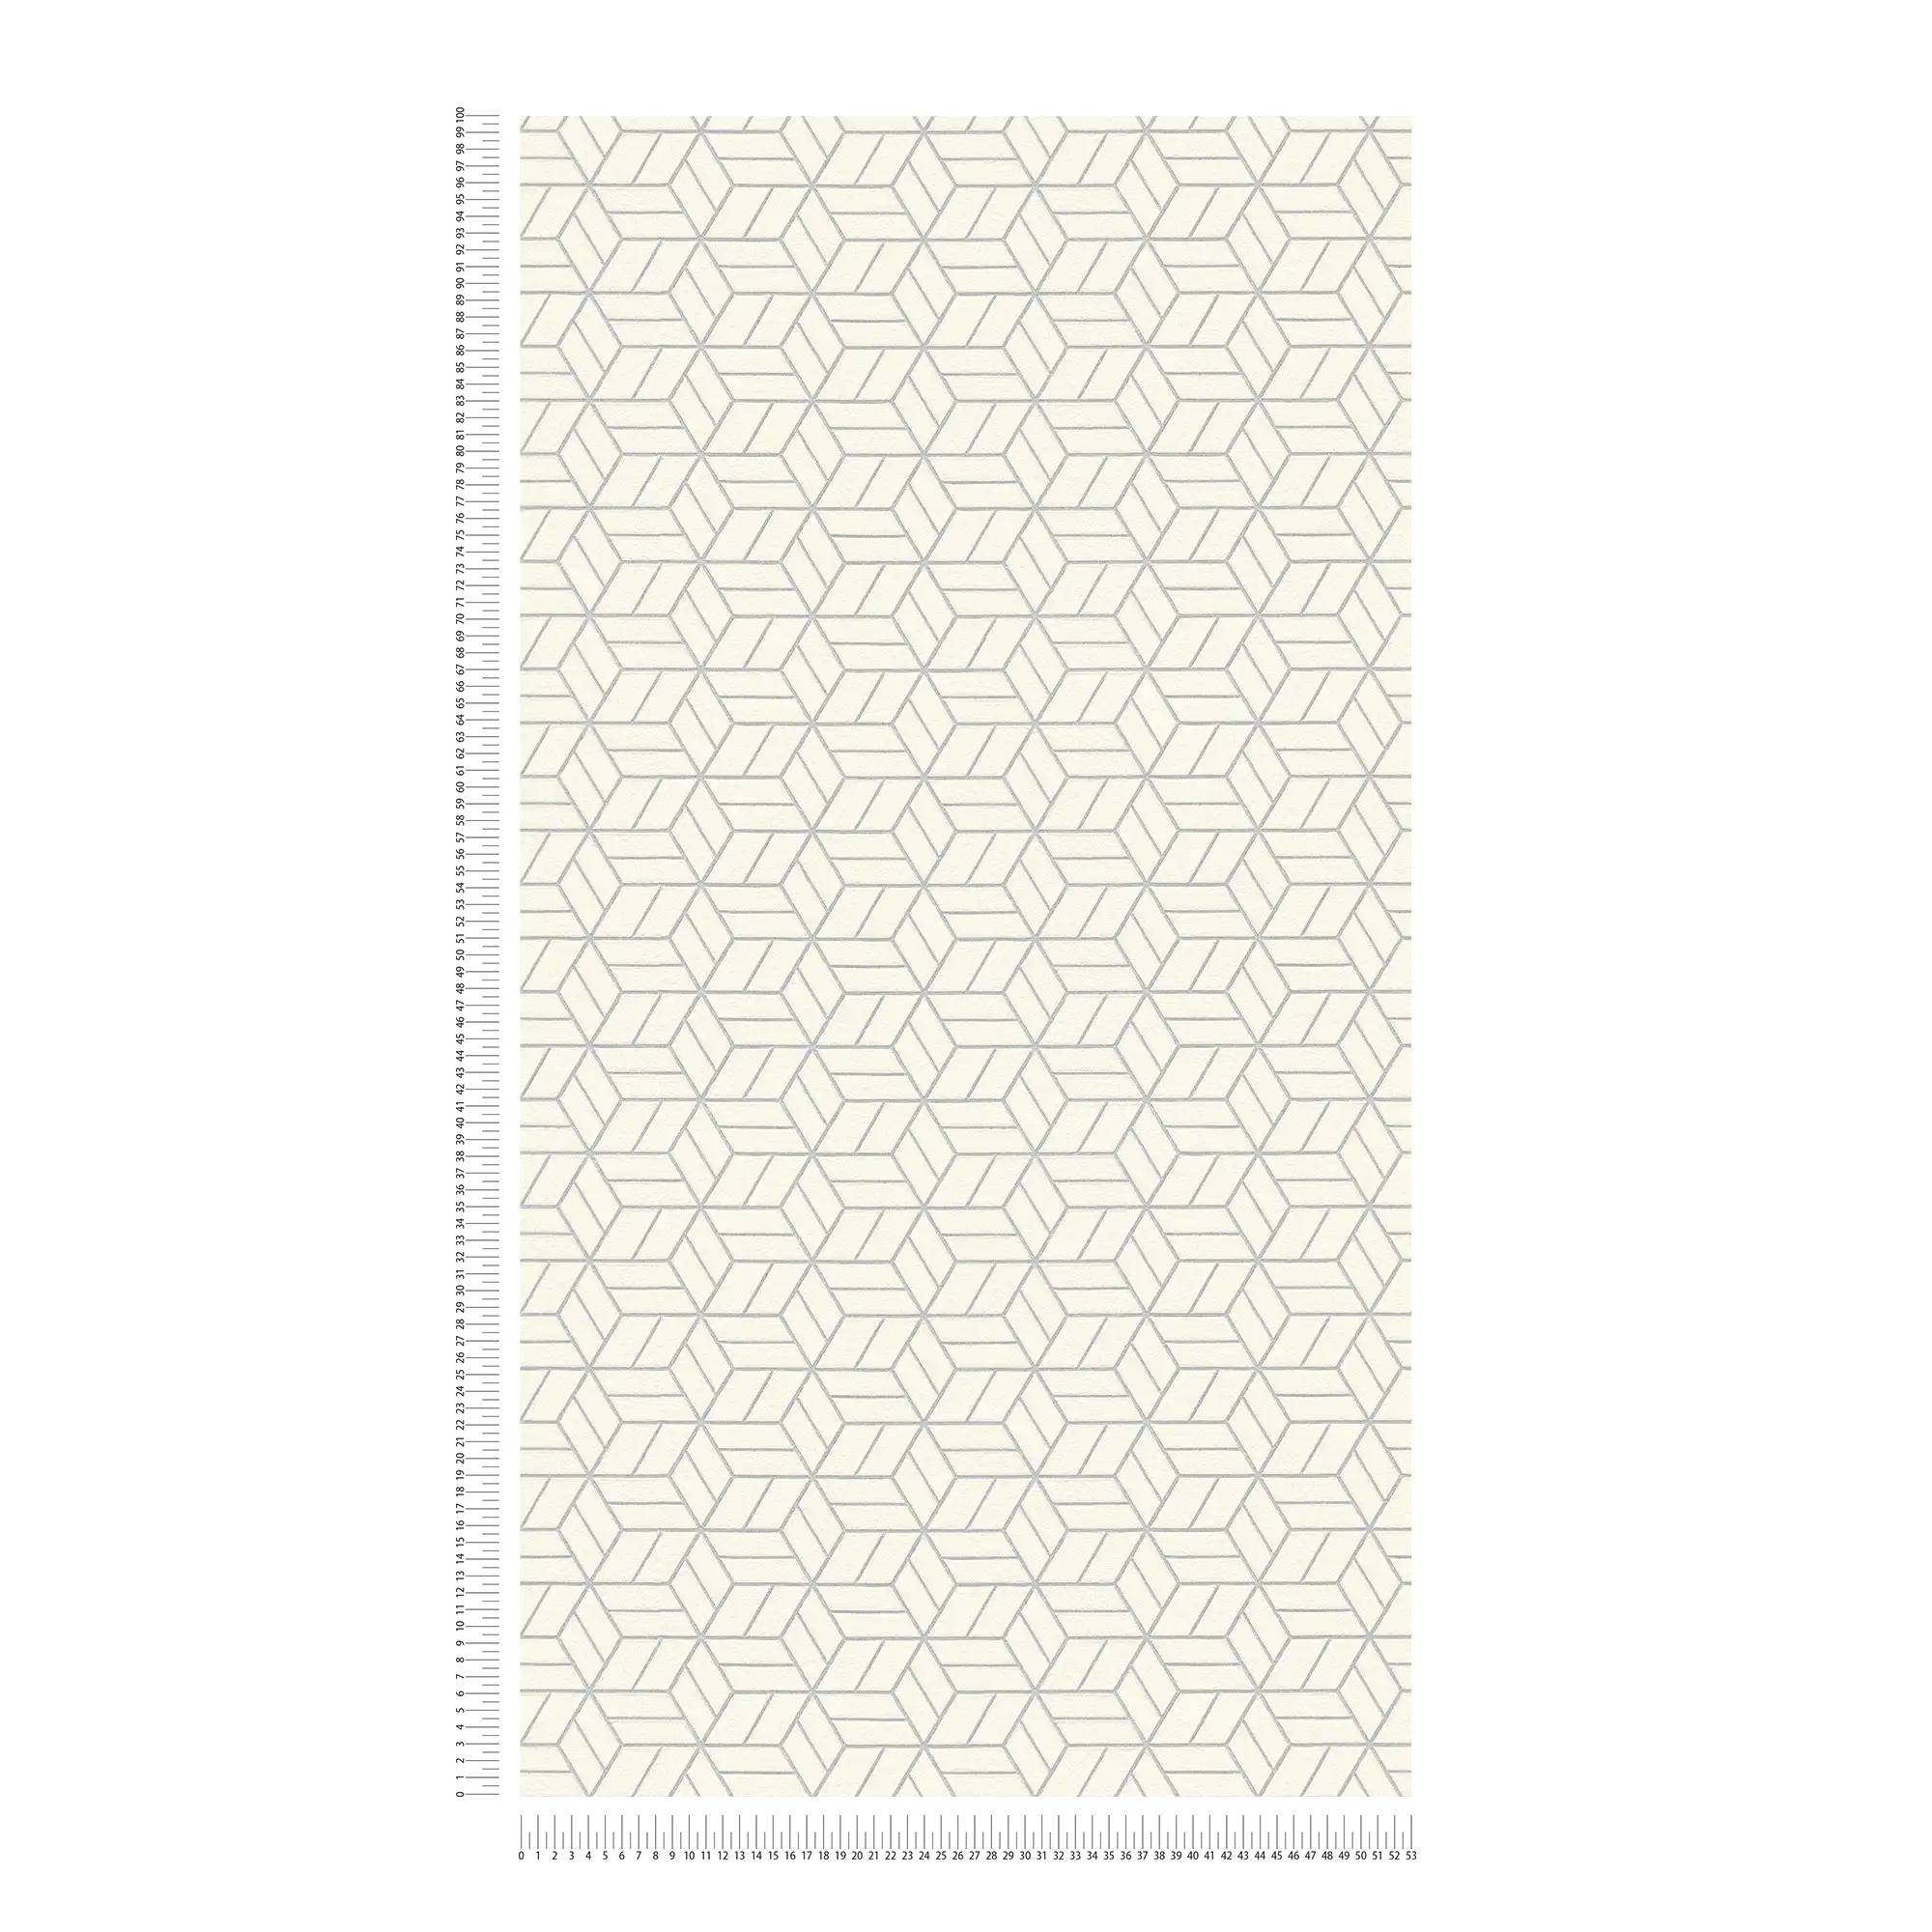             Tapete geometrisches Muster & Glitzer-Effekt – Silber, Grau, Weiß
        